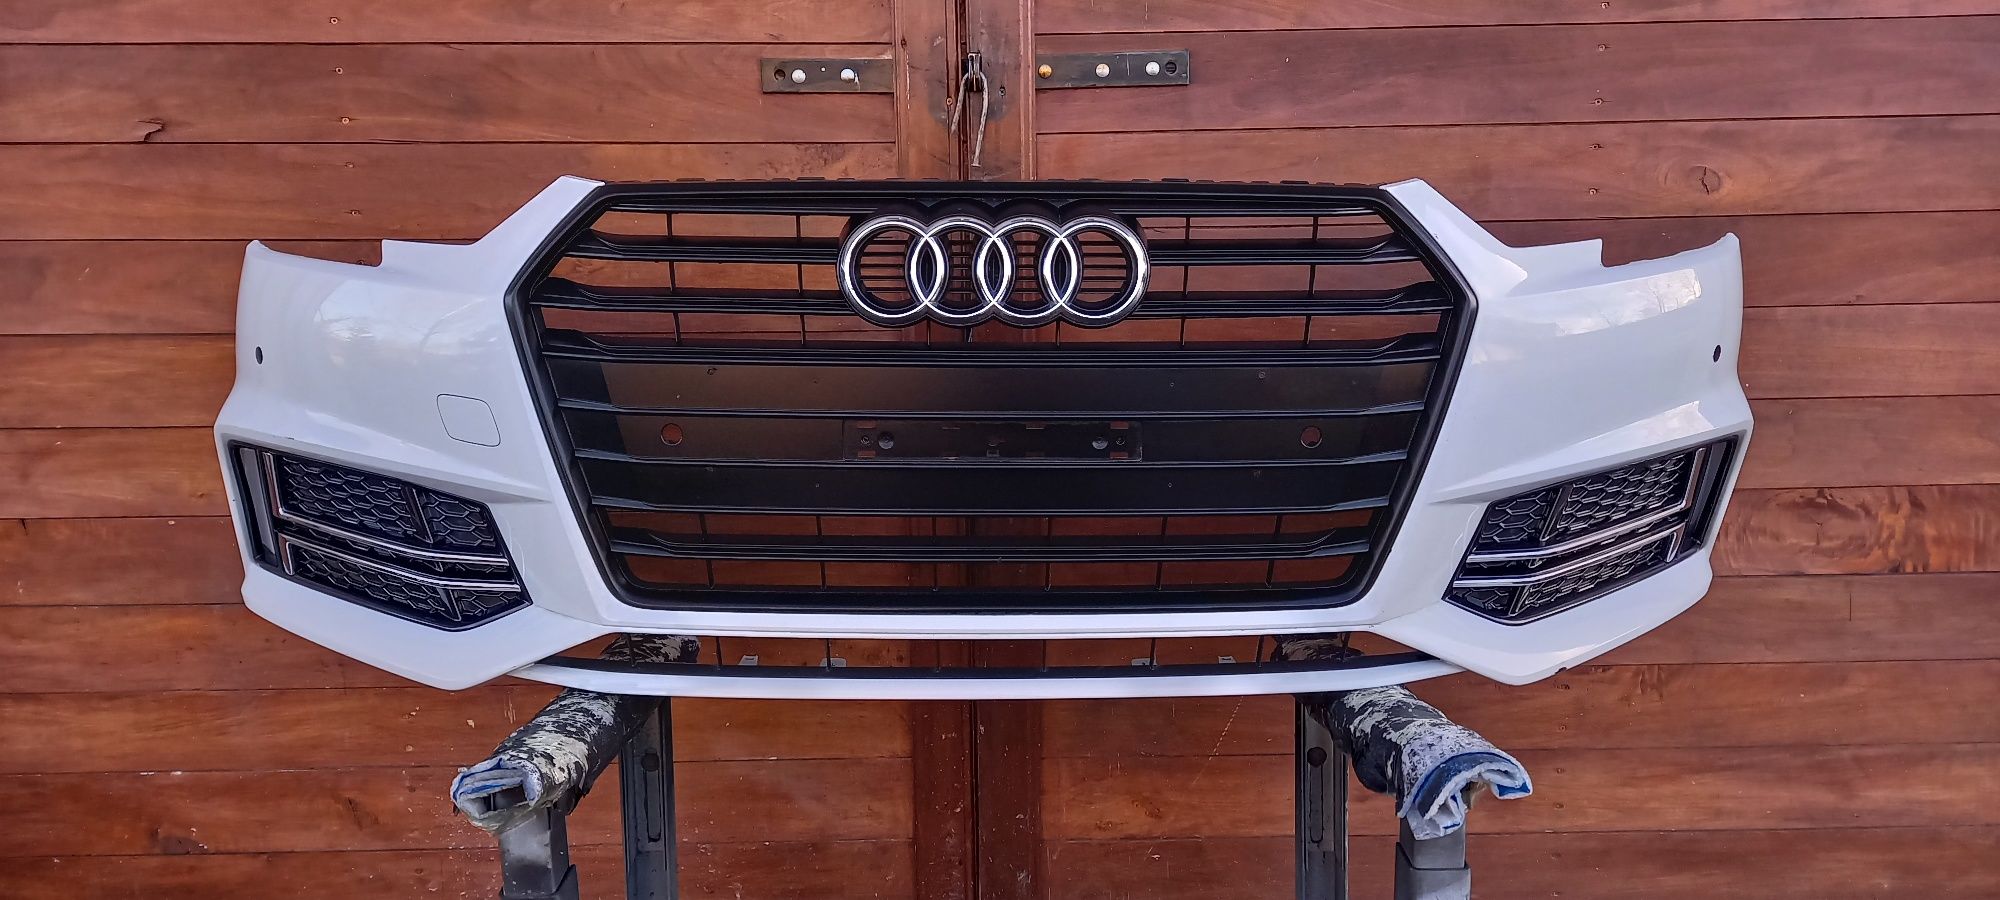 Бампер Audi A4 B9 s-line USA Europe 2015-2019 року оригінал бу